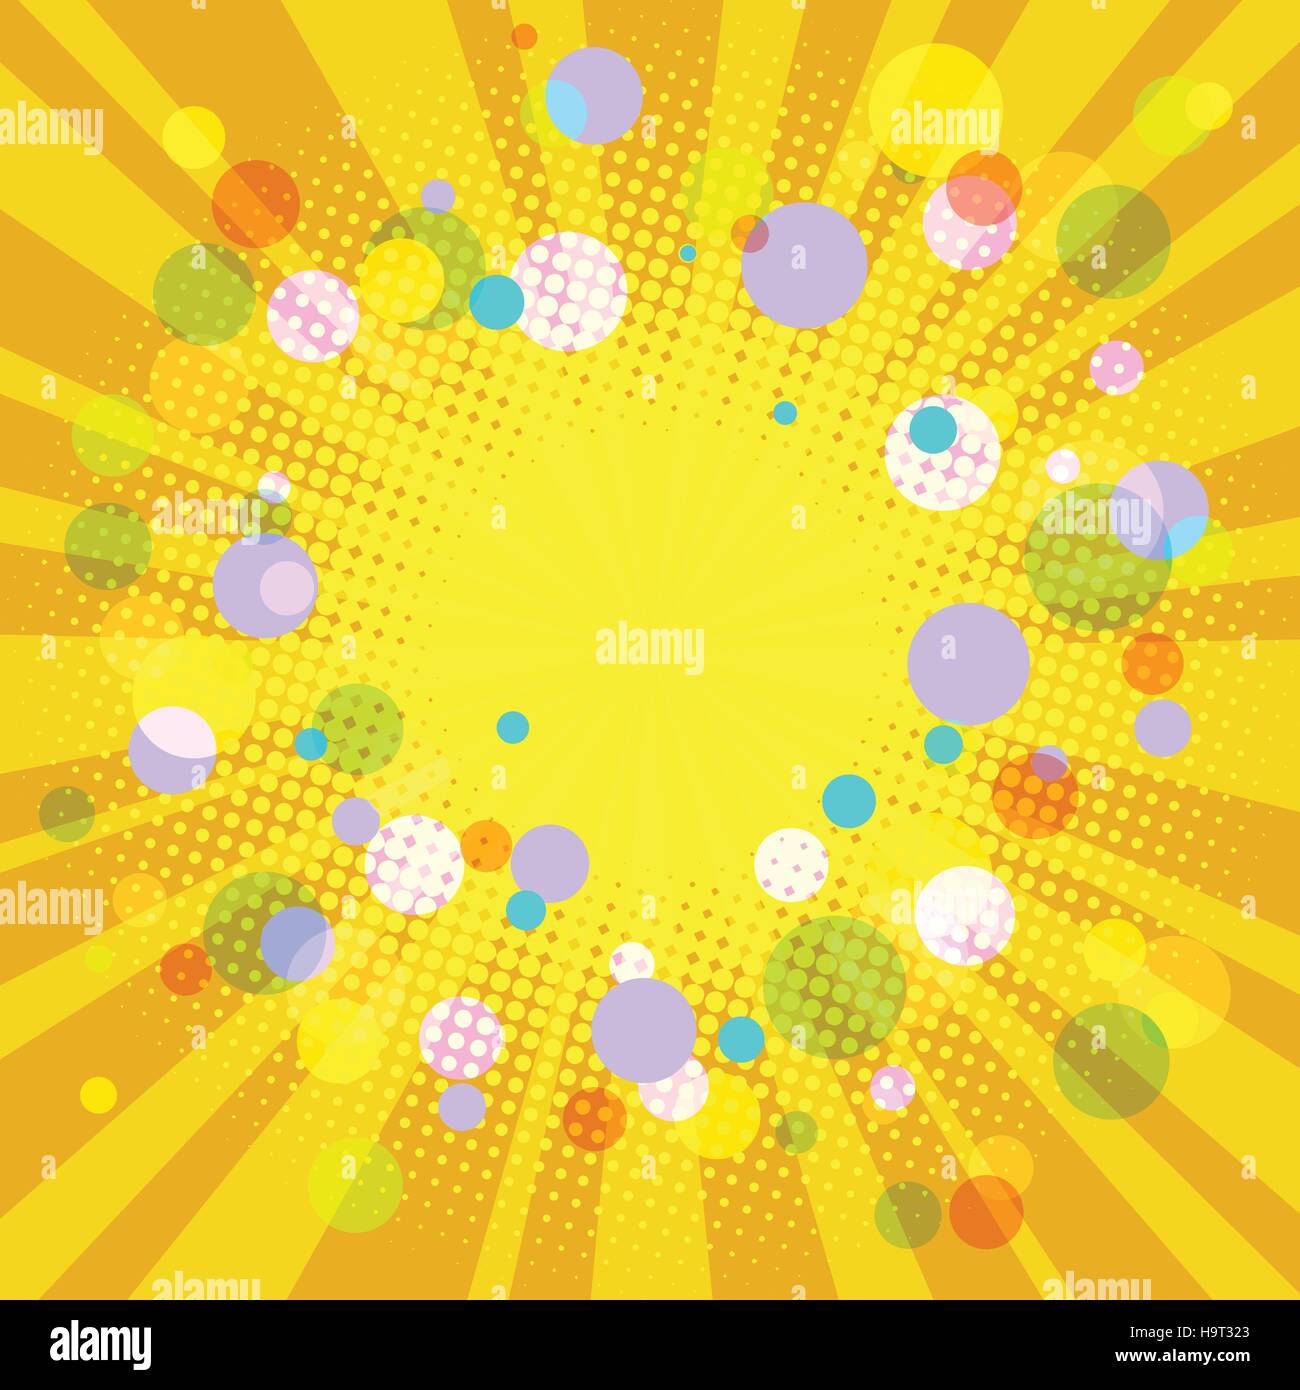 Warmen gelben festlichen Hintergrund, Pop-Art-Retro-Vektor-illustration Stock Vektor